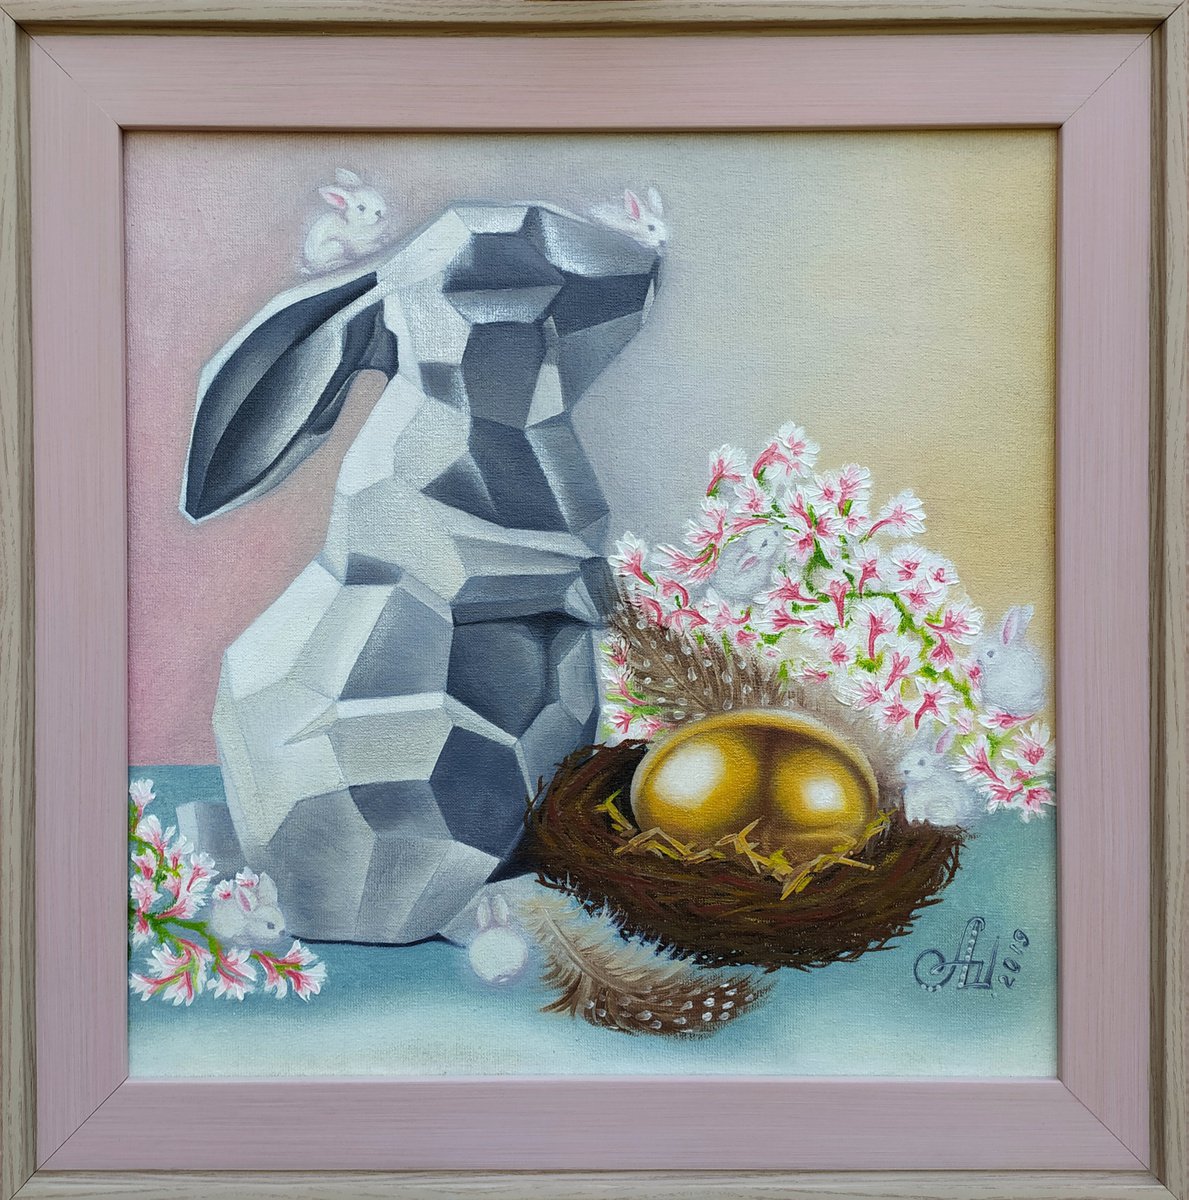 The tale of sunny bunnies by Anna Shabalova